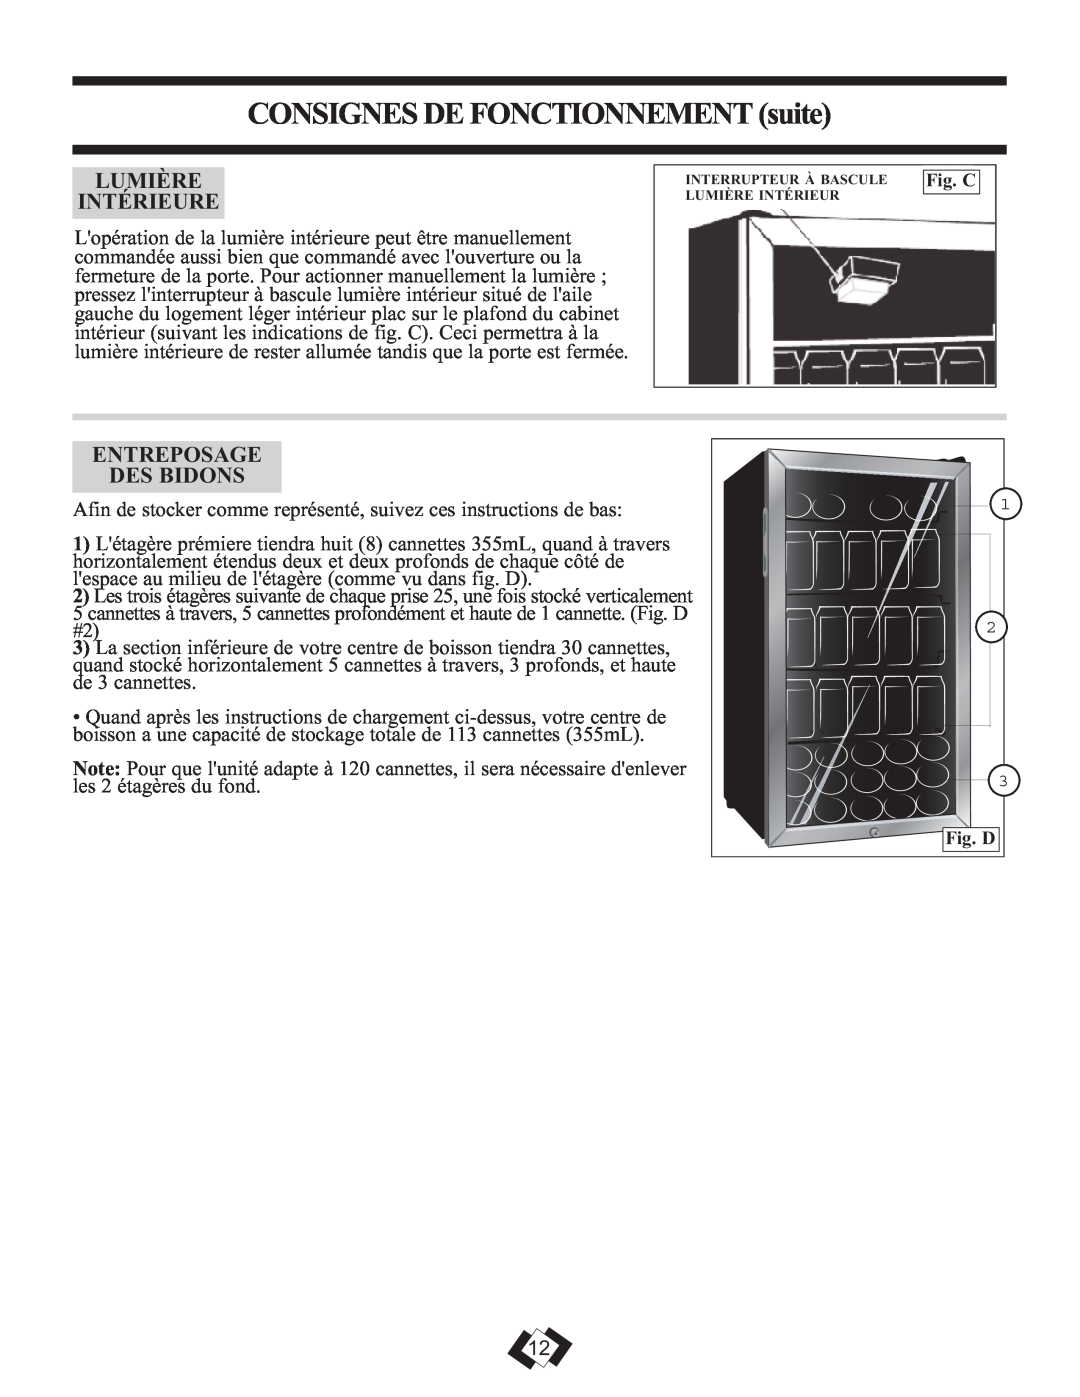 Danby DBC120BLS warranty CONSIGNES DE FONCTIONNEMENT suite, Lumière Intérieure, Entreposage Des Bidons 